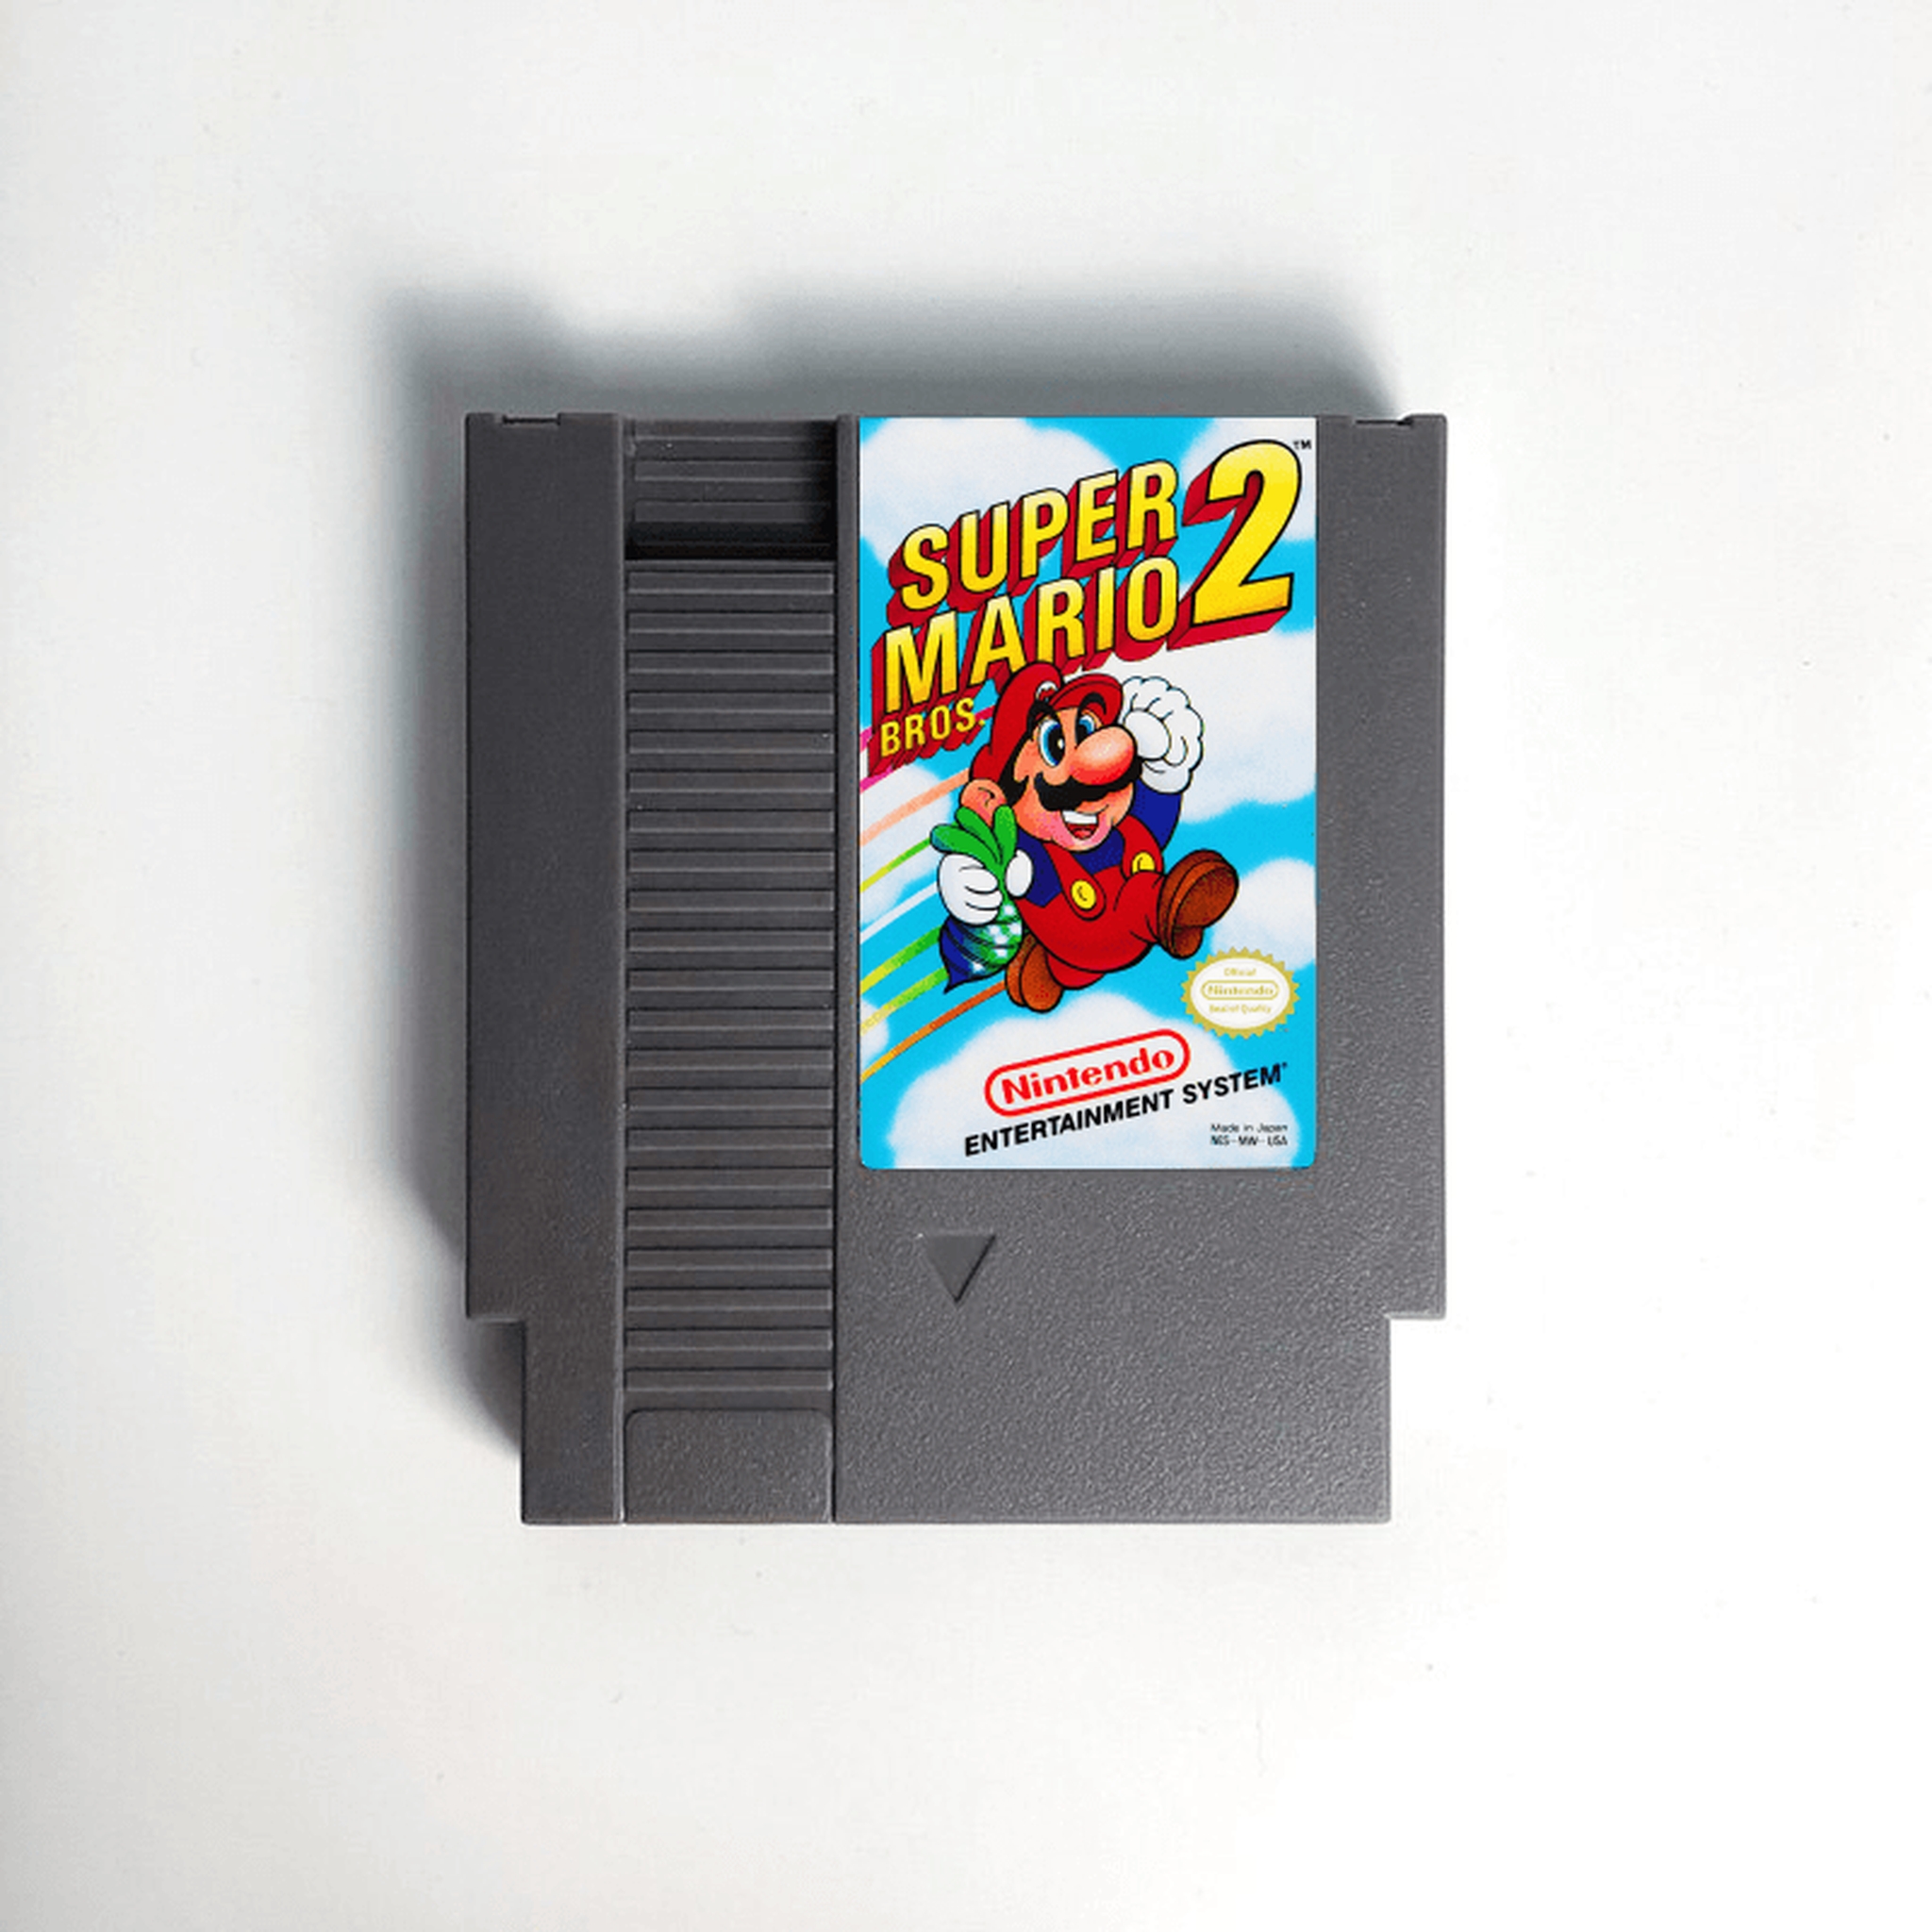 Cartucho de Super Nintendo Com 25 Jogos do Super Mario World